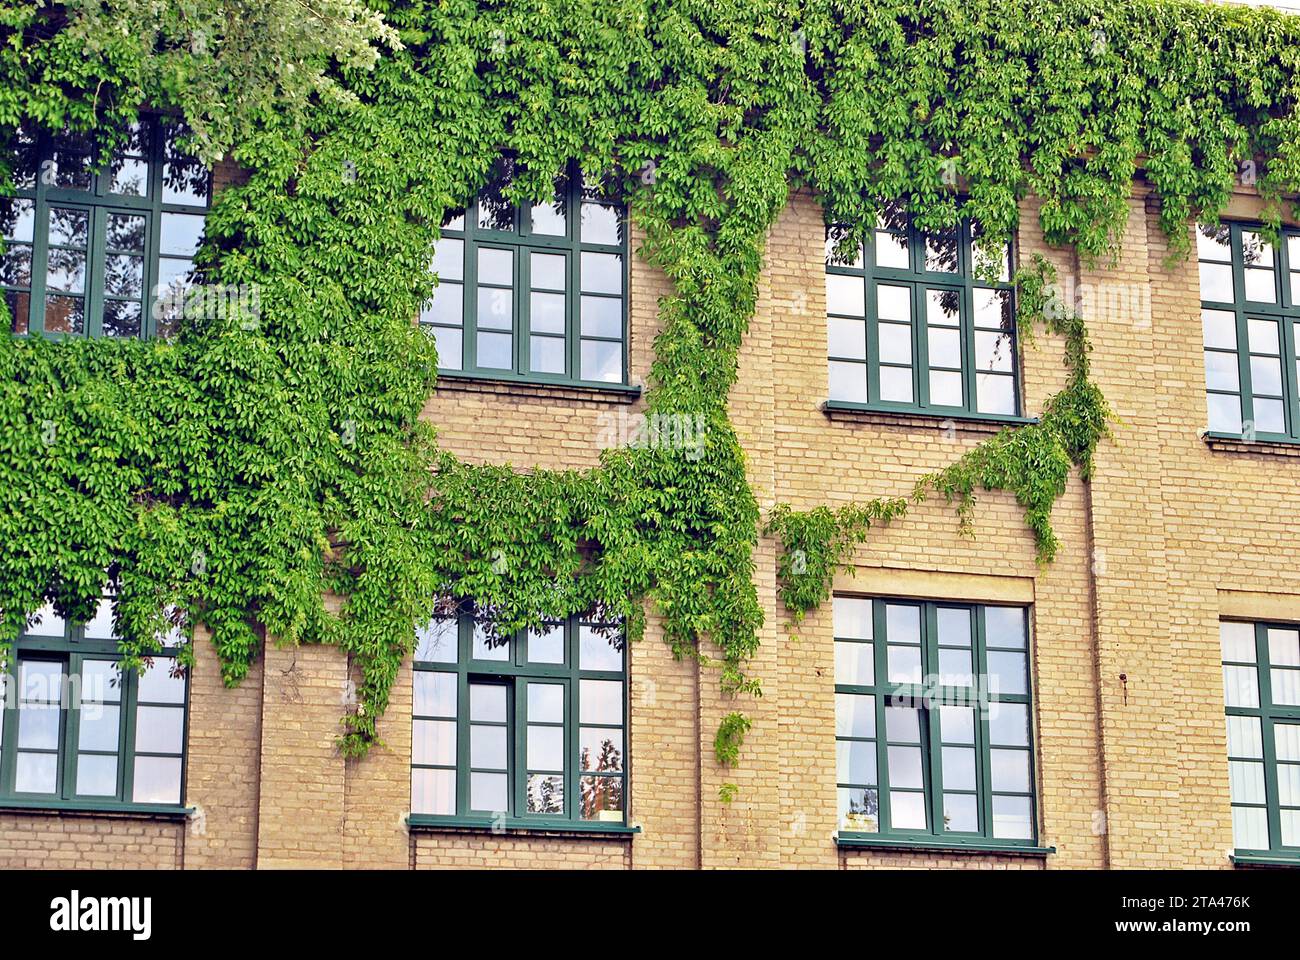 Bâtiment avec les plantes grimpantes, du lierre poussant sur le mur. L'écologie et la vie en vert dans la ville, l'environnement urbain concept. Banque D'Images